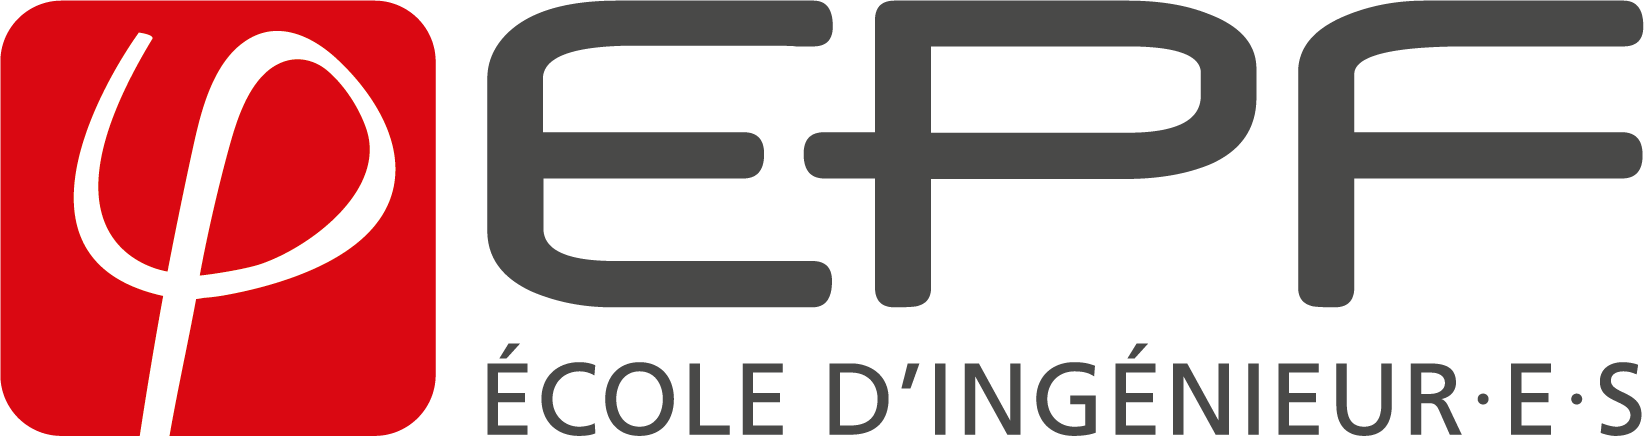 Group-Ing ES logo epf q 2021.png